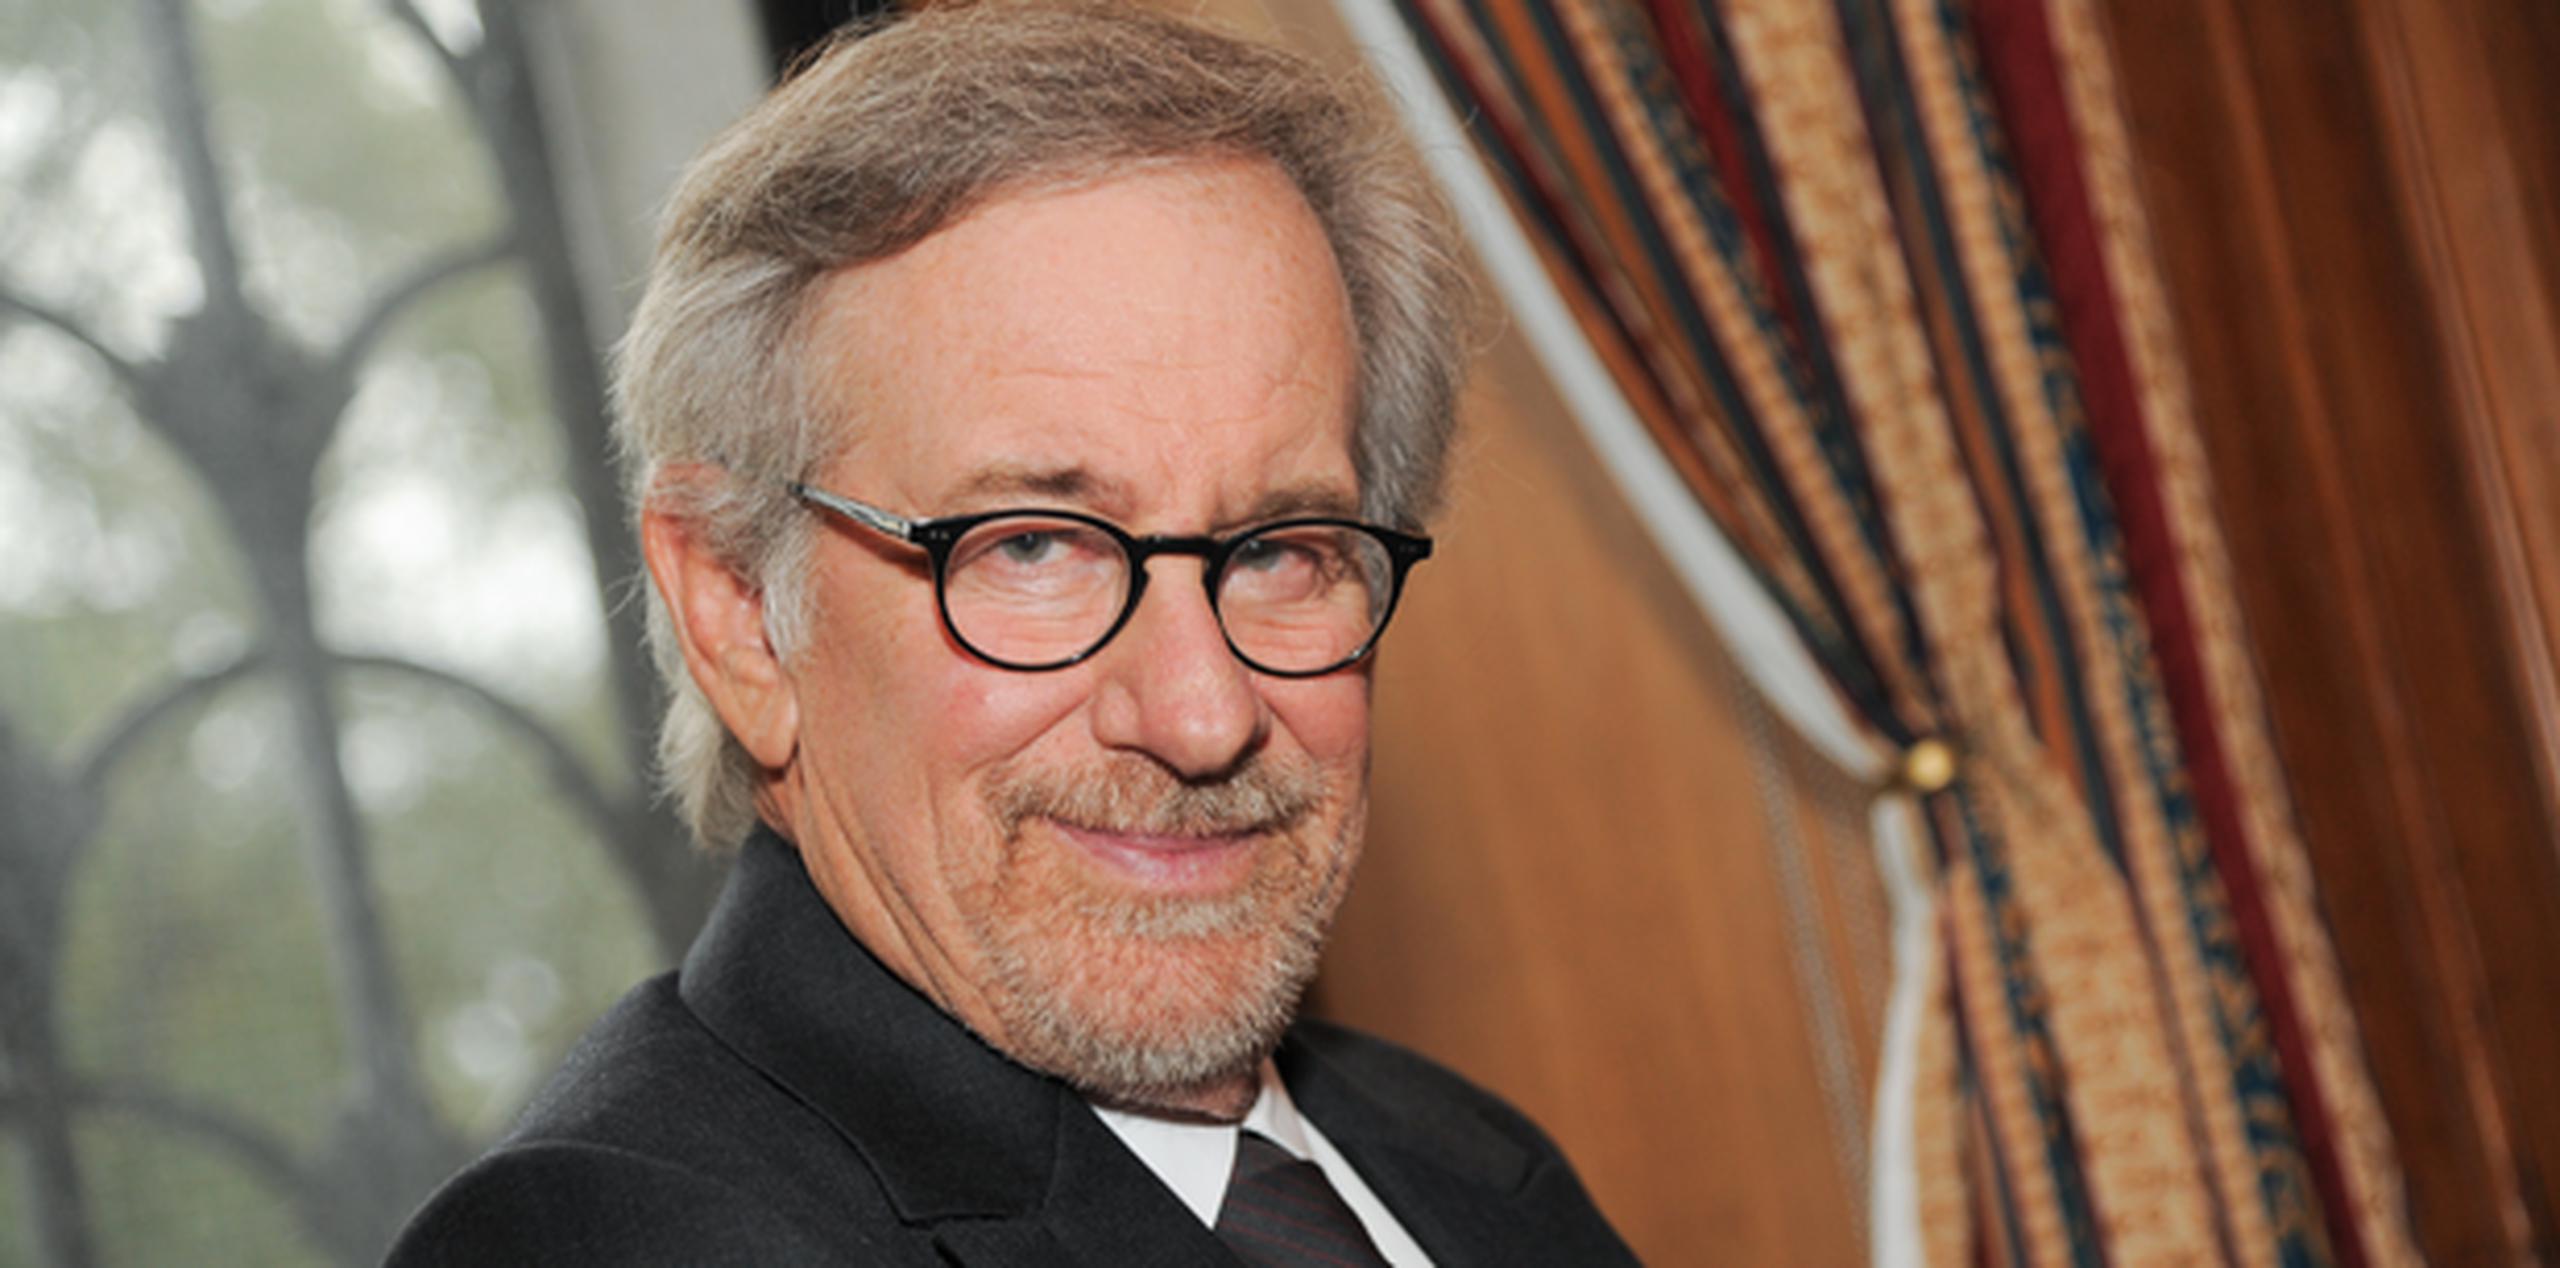 El jueves por la noche Spielberg y su fundación USC Shoah celebraron su 20 aniversario, así como el aniversario de "Schindler's List", con una gala en Nueva York. (AP)